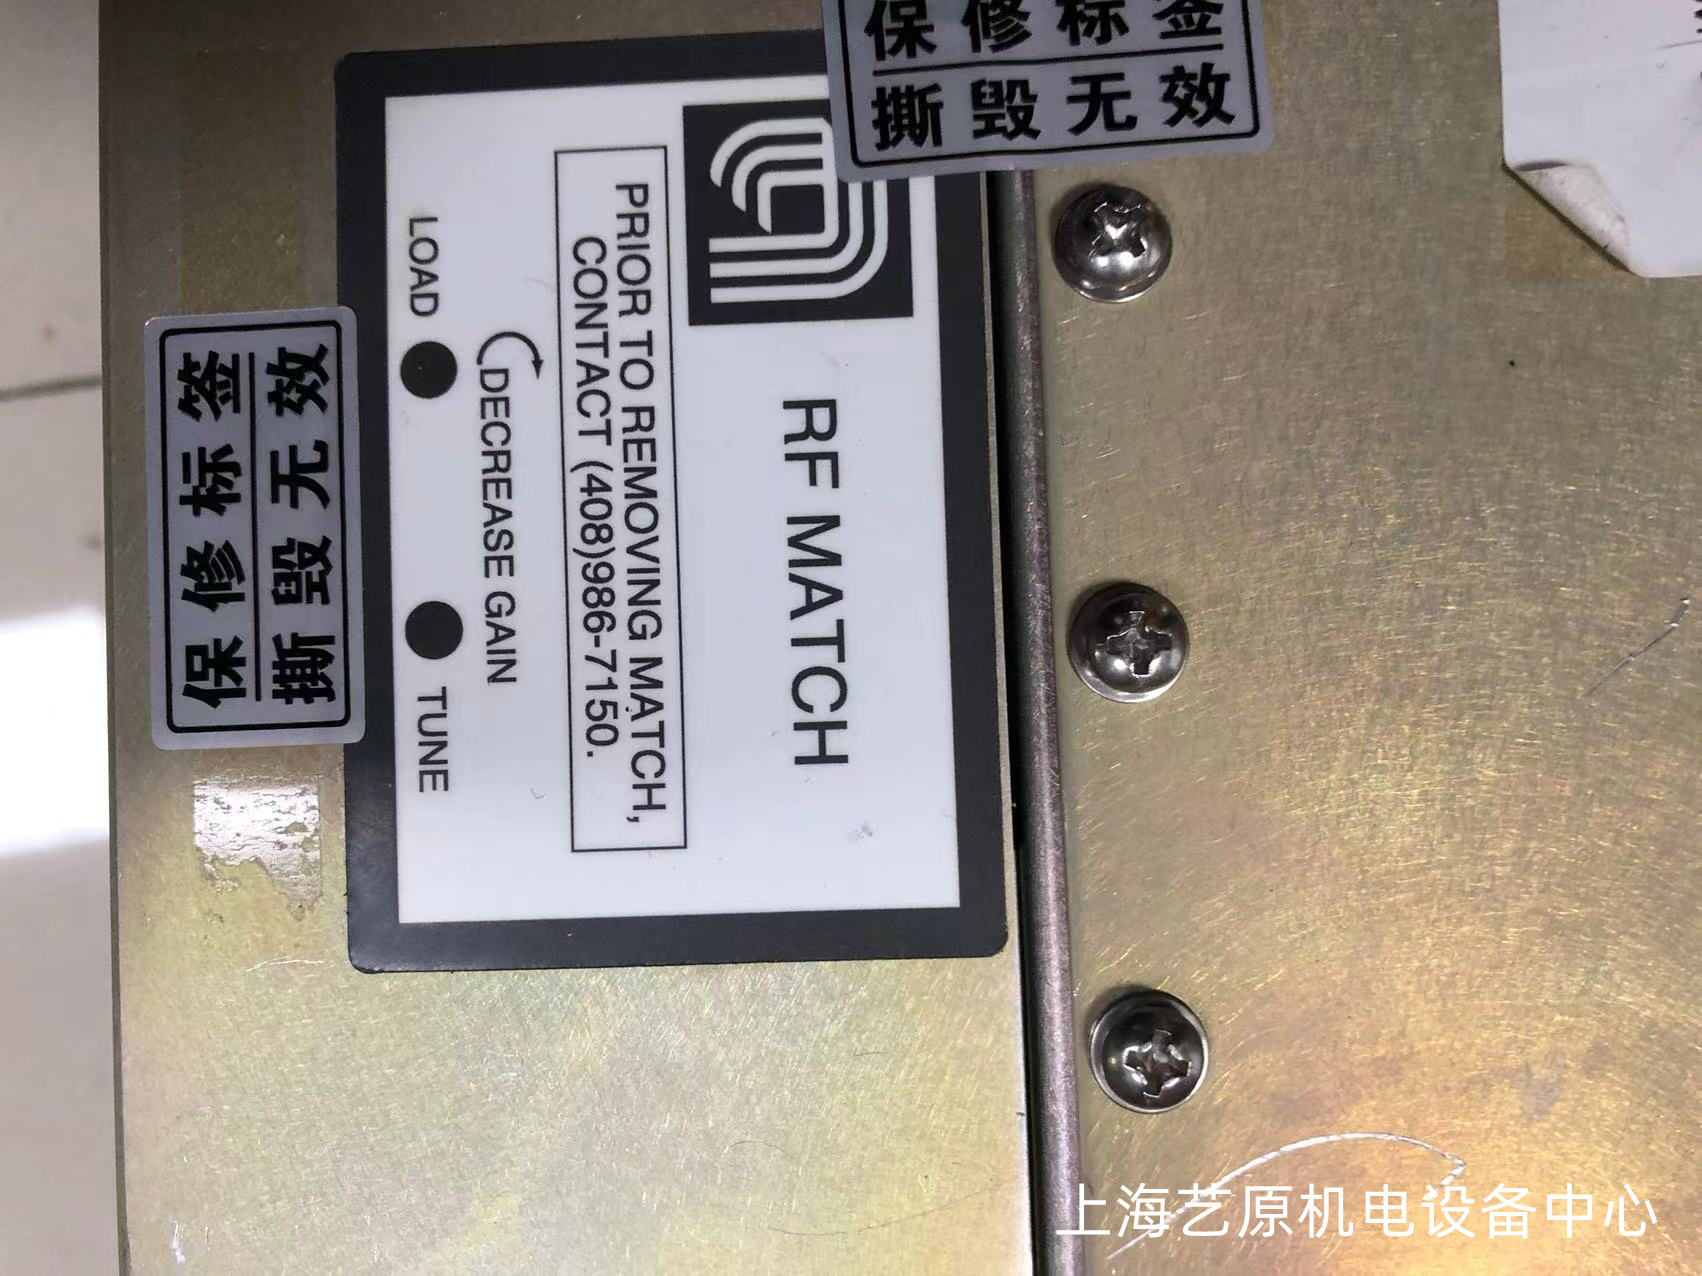 云浮RF MATCH 0010-36408维修厂家 安全系数高 提供免费故障咨询